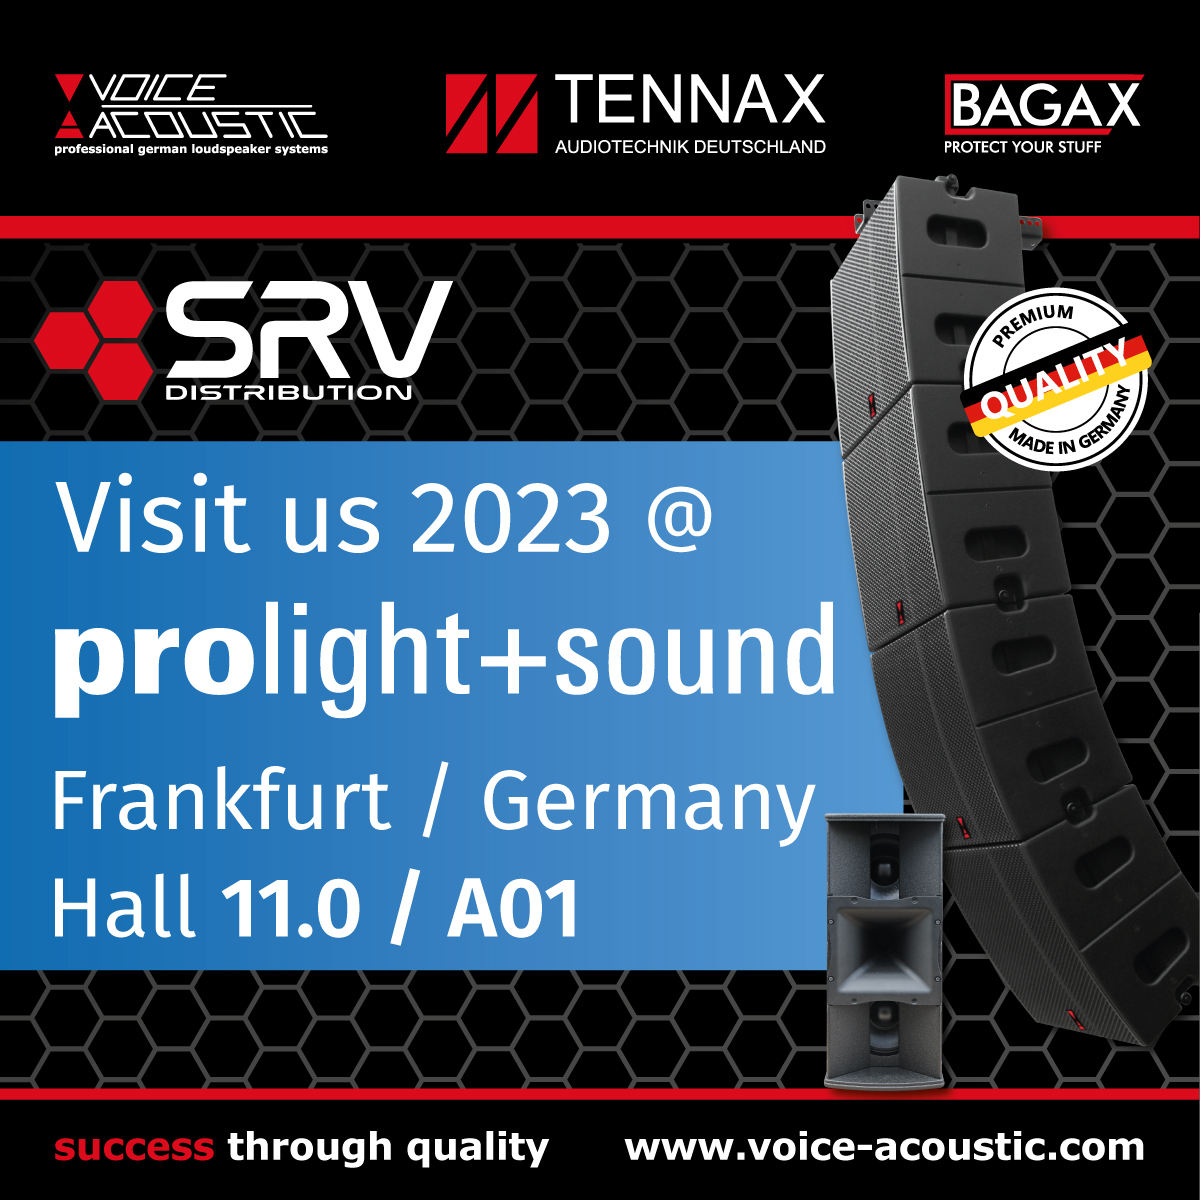 Voice-Acoustic und TENNAX auf der Prolight + Sound 2023 in Frankfurt